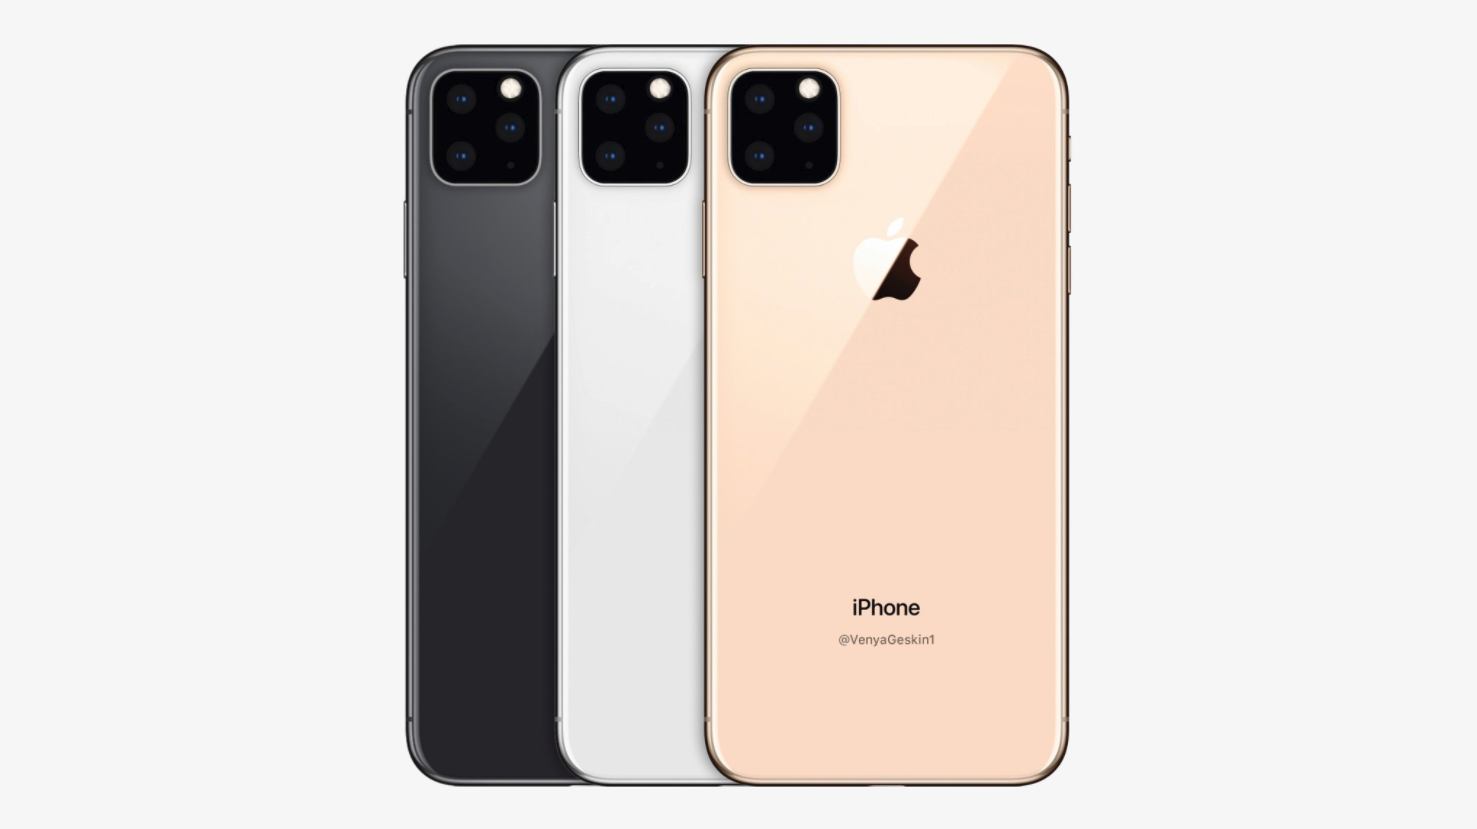 2019 iPhone modellerinin arka tasarımını ortaya koyan kalıp fotoğrafları yayınlandı